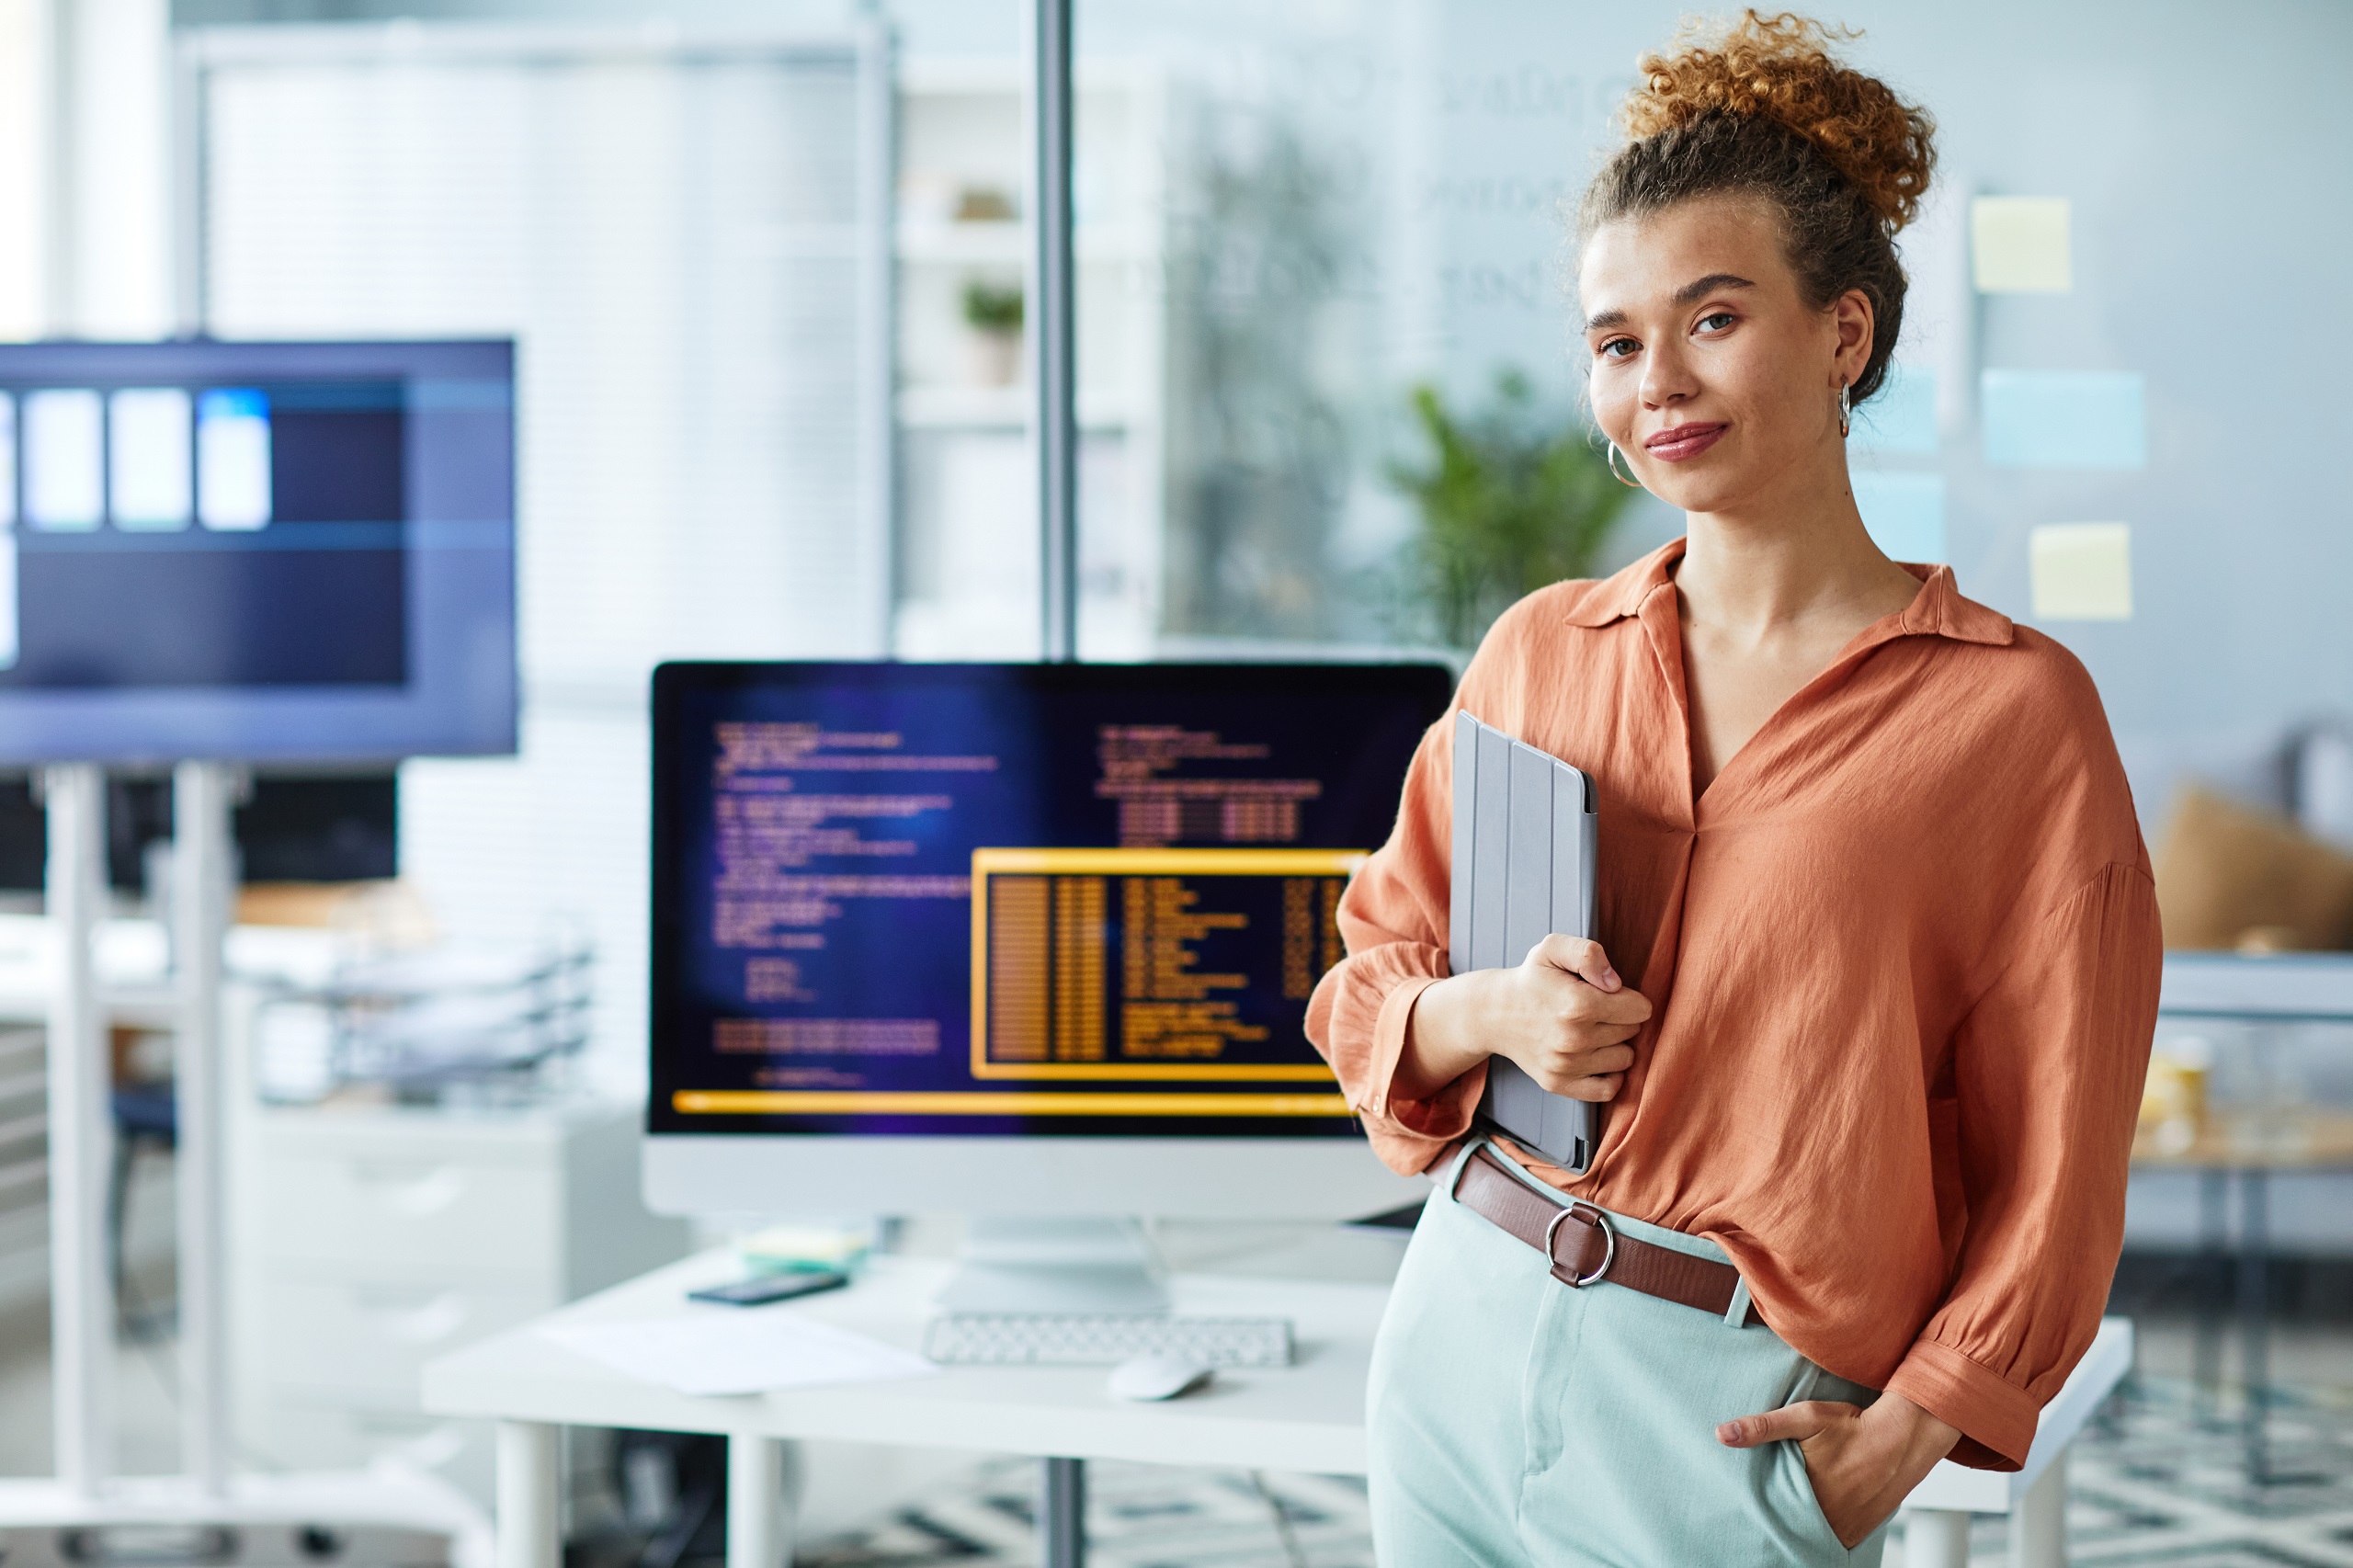 Eine Frau steht vor einem Computer mit Codes und hält ein Notizbuch. Symbolbild für mehr Frauen in technischen Lehrberufen.